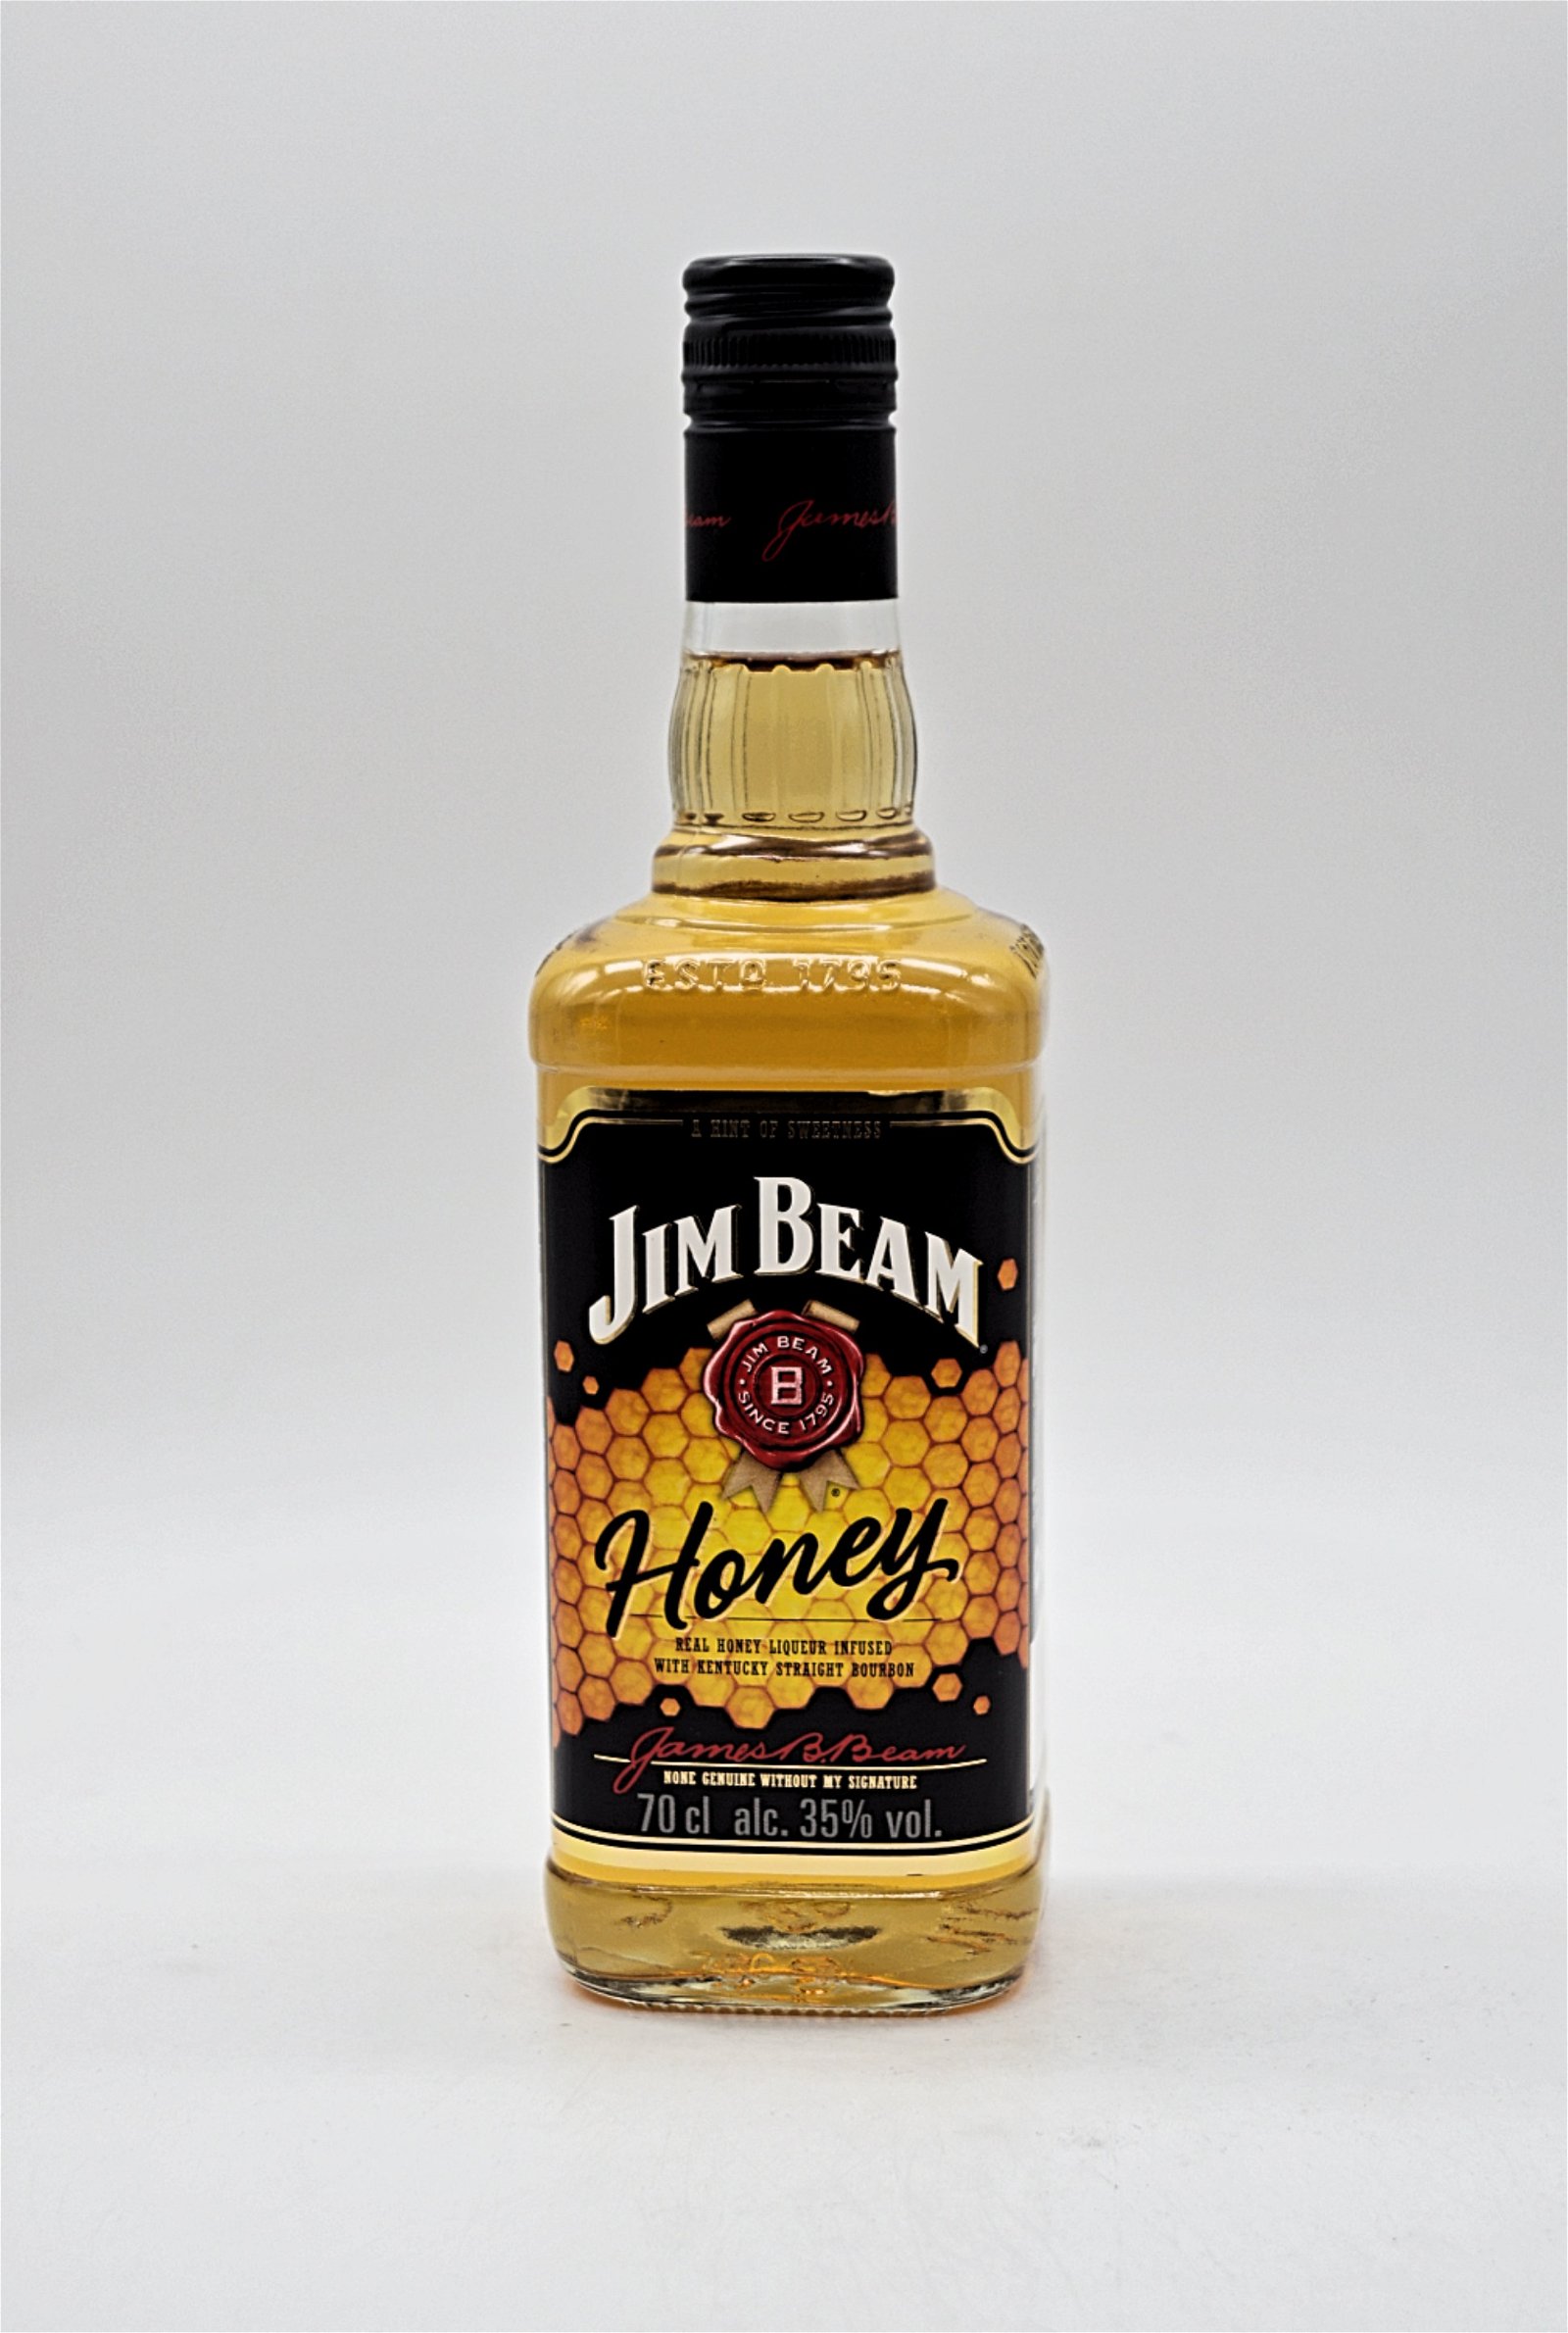 Jim Beam Honey Kentucky Straight Bourbon Whiskey